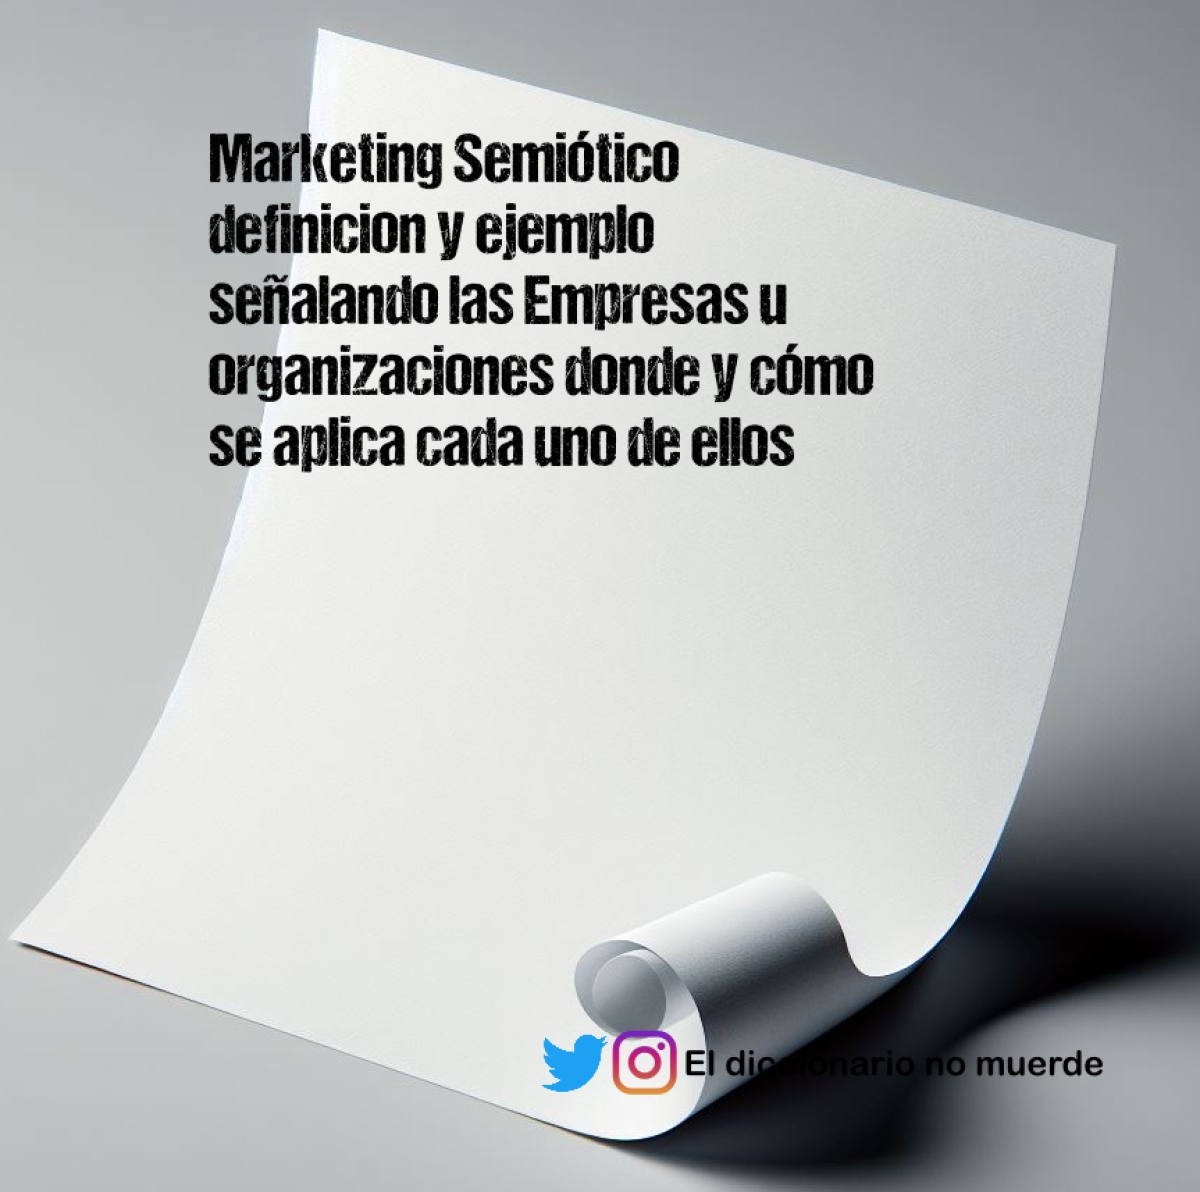 Marketing Semiótico   definicion y ejemplo señalando las Empresas u organizaciones donde y cómo se aplica cada uno de ellos